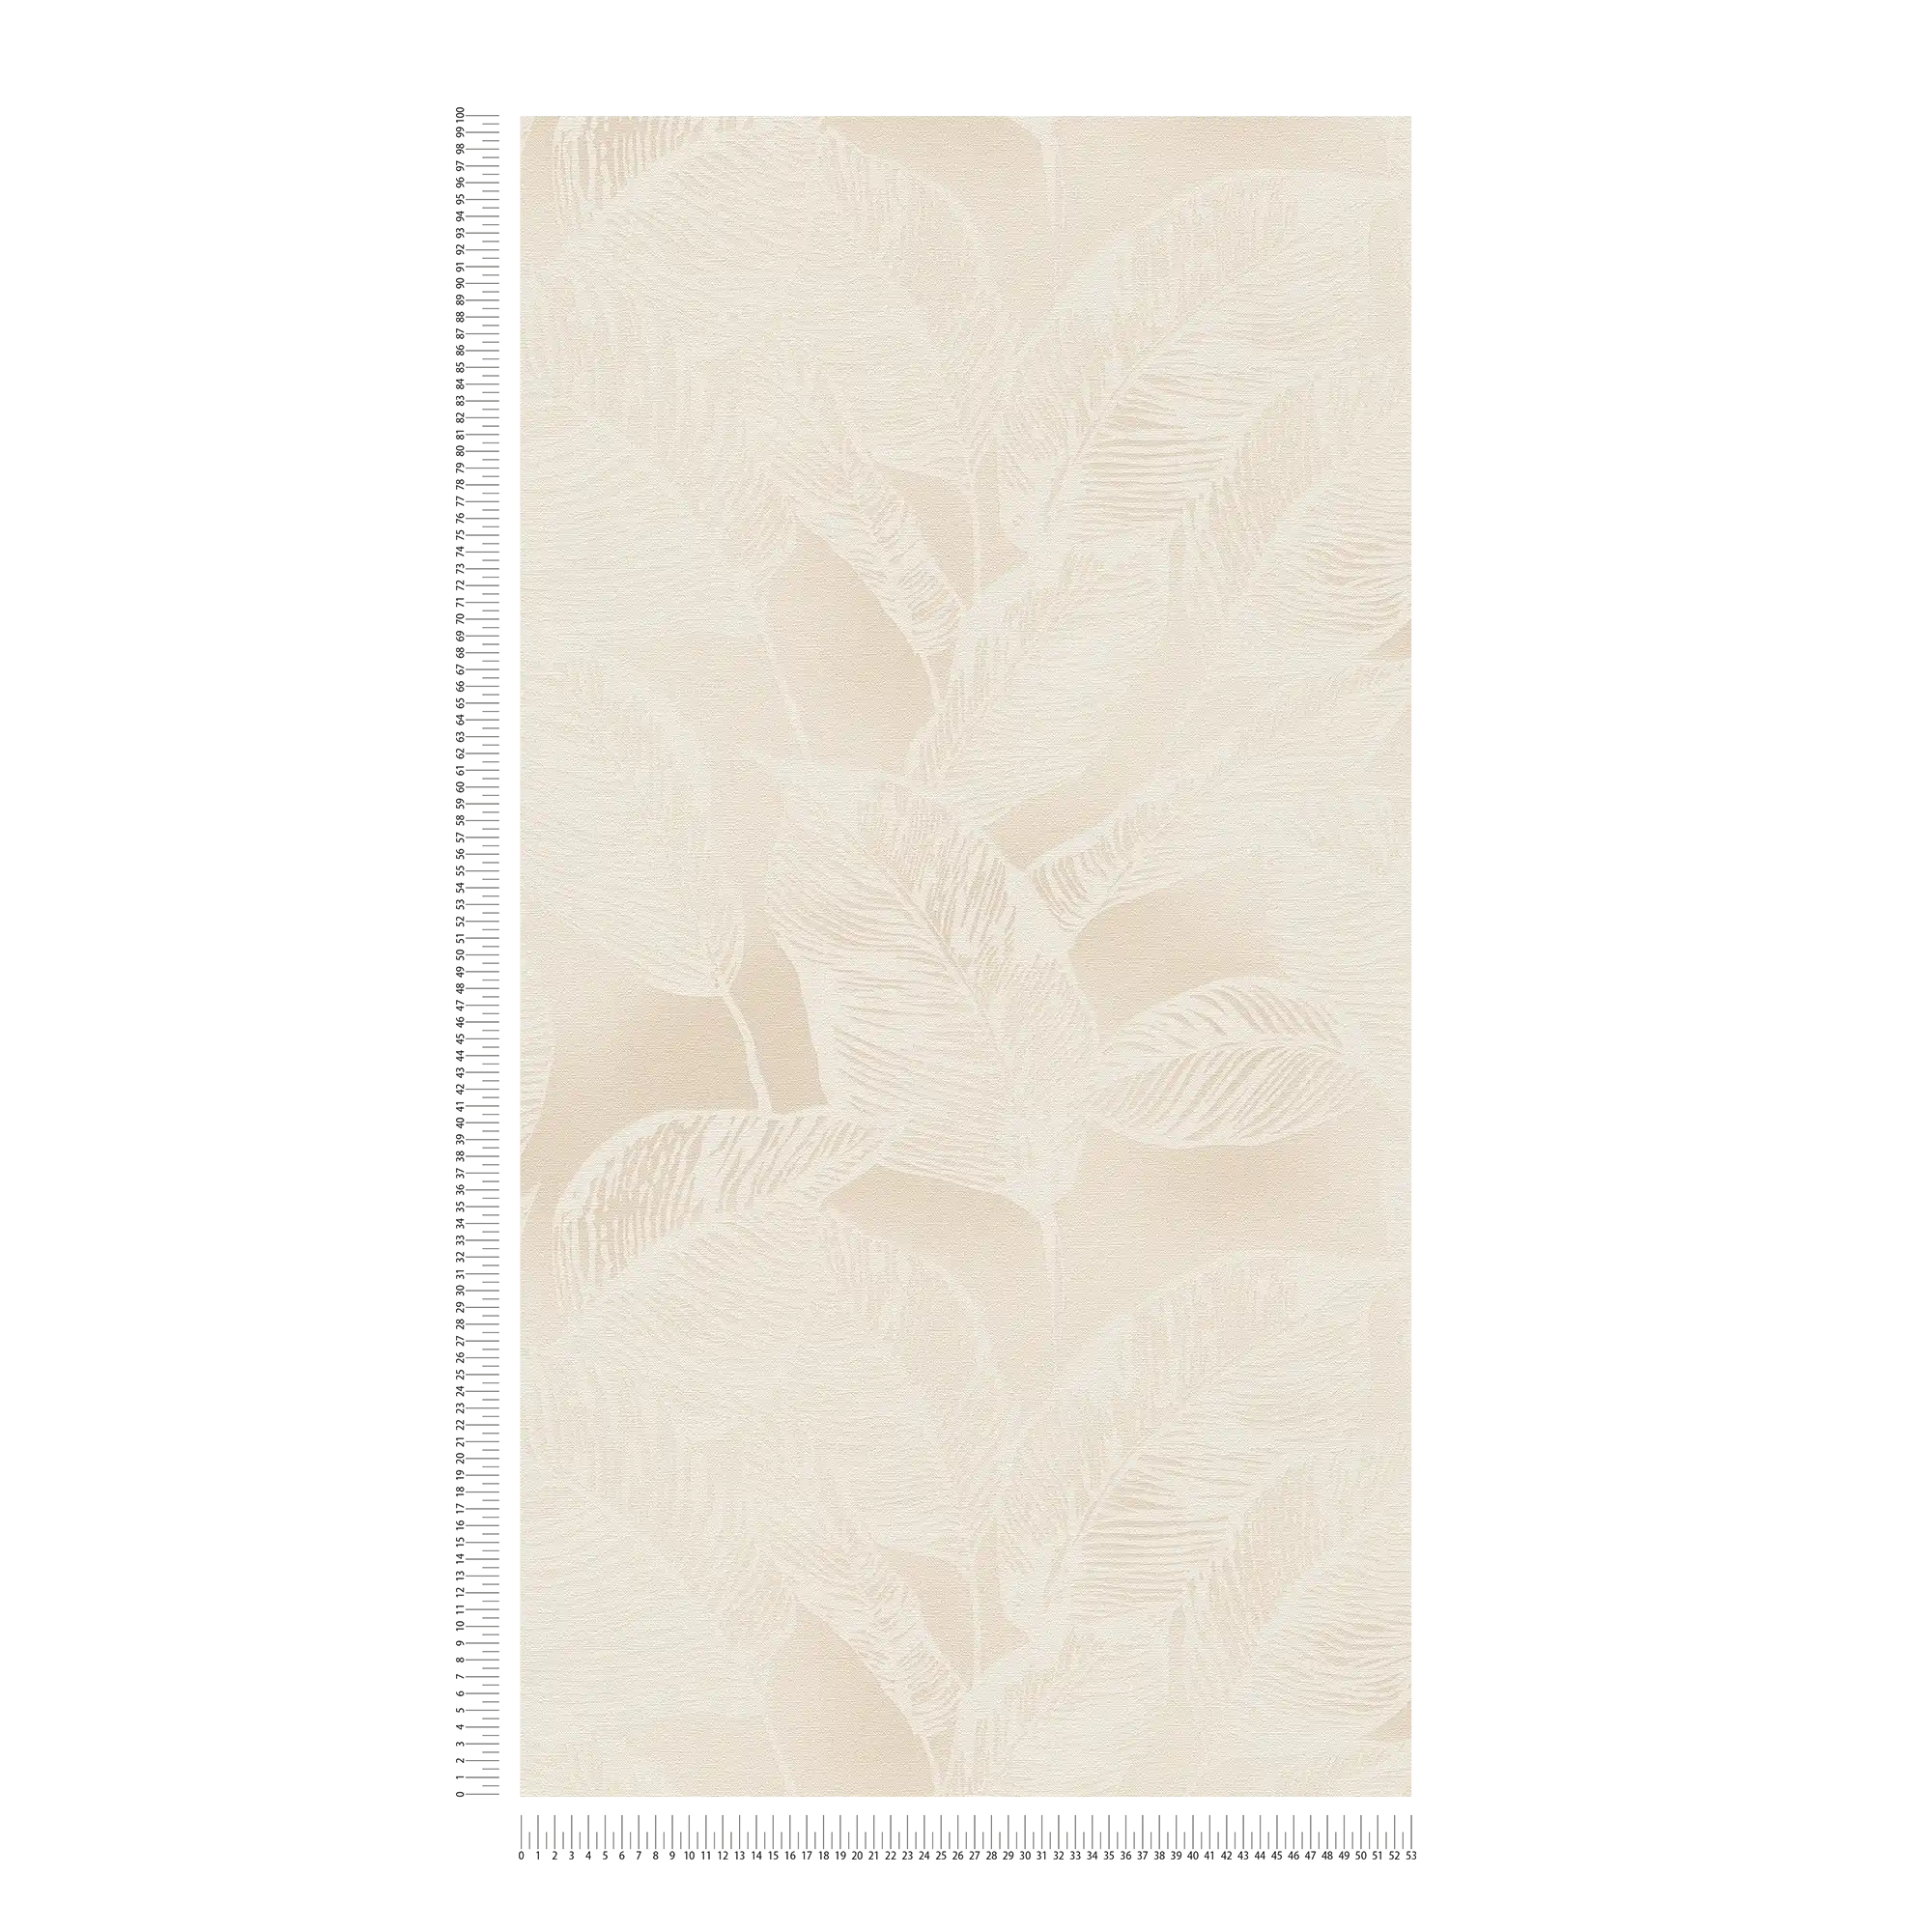             Carta da parati in tessuto non tessuto con motivo a foglie senza PVC - beige, bianco
        